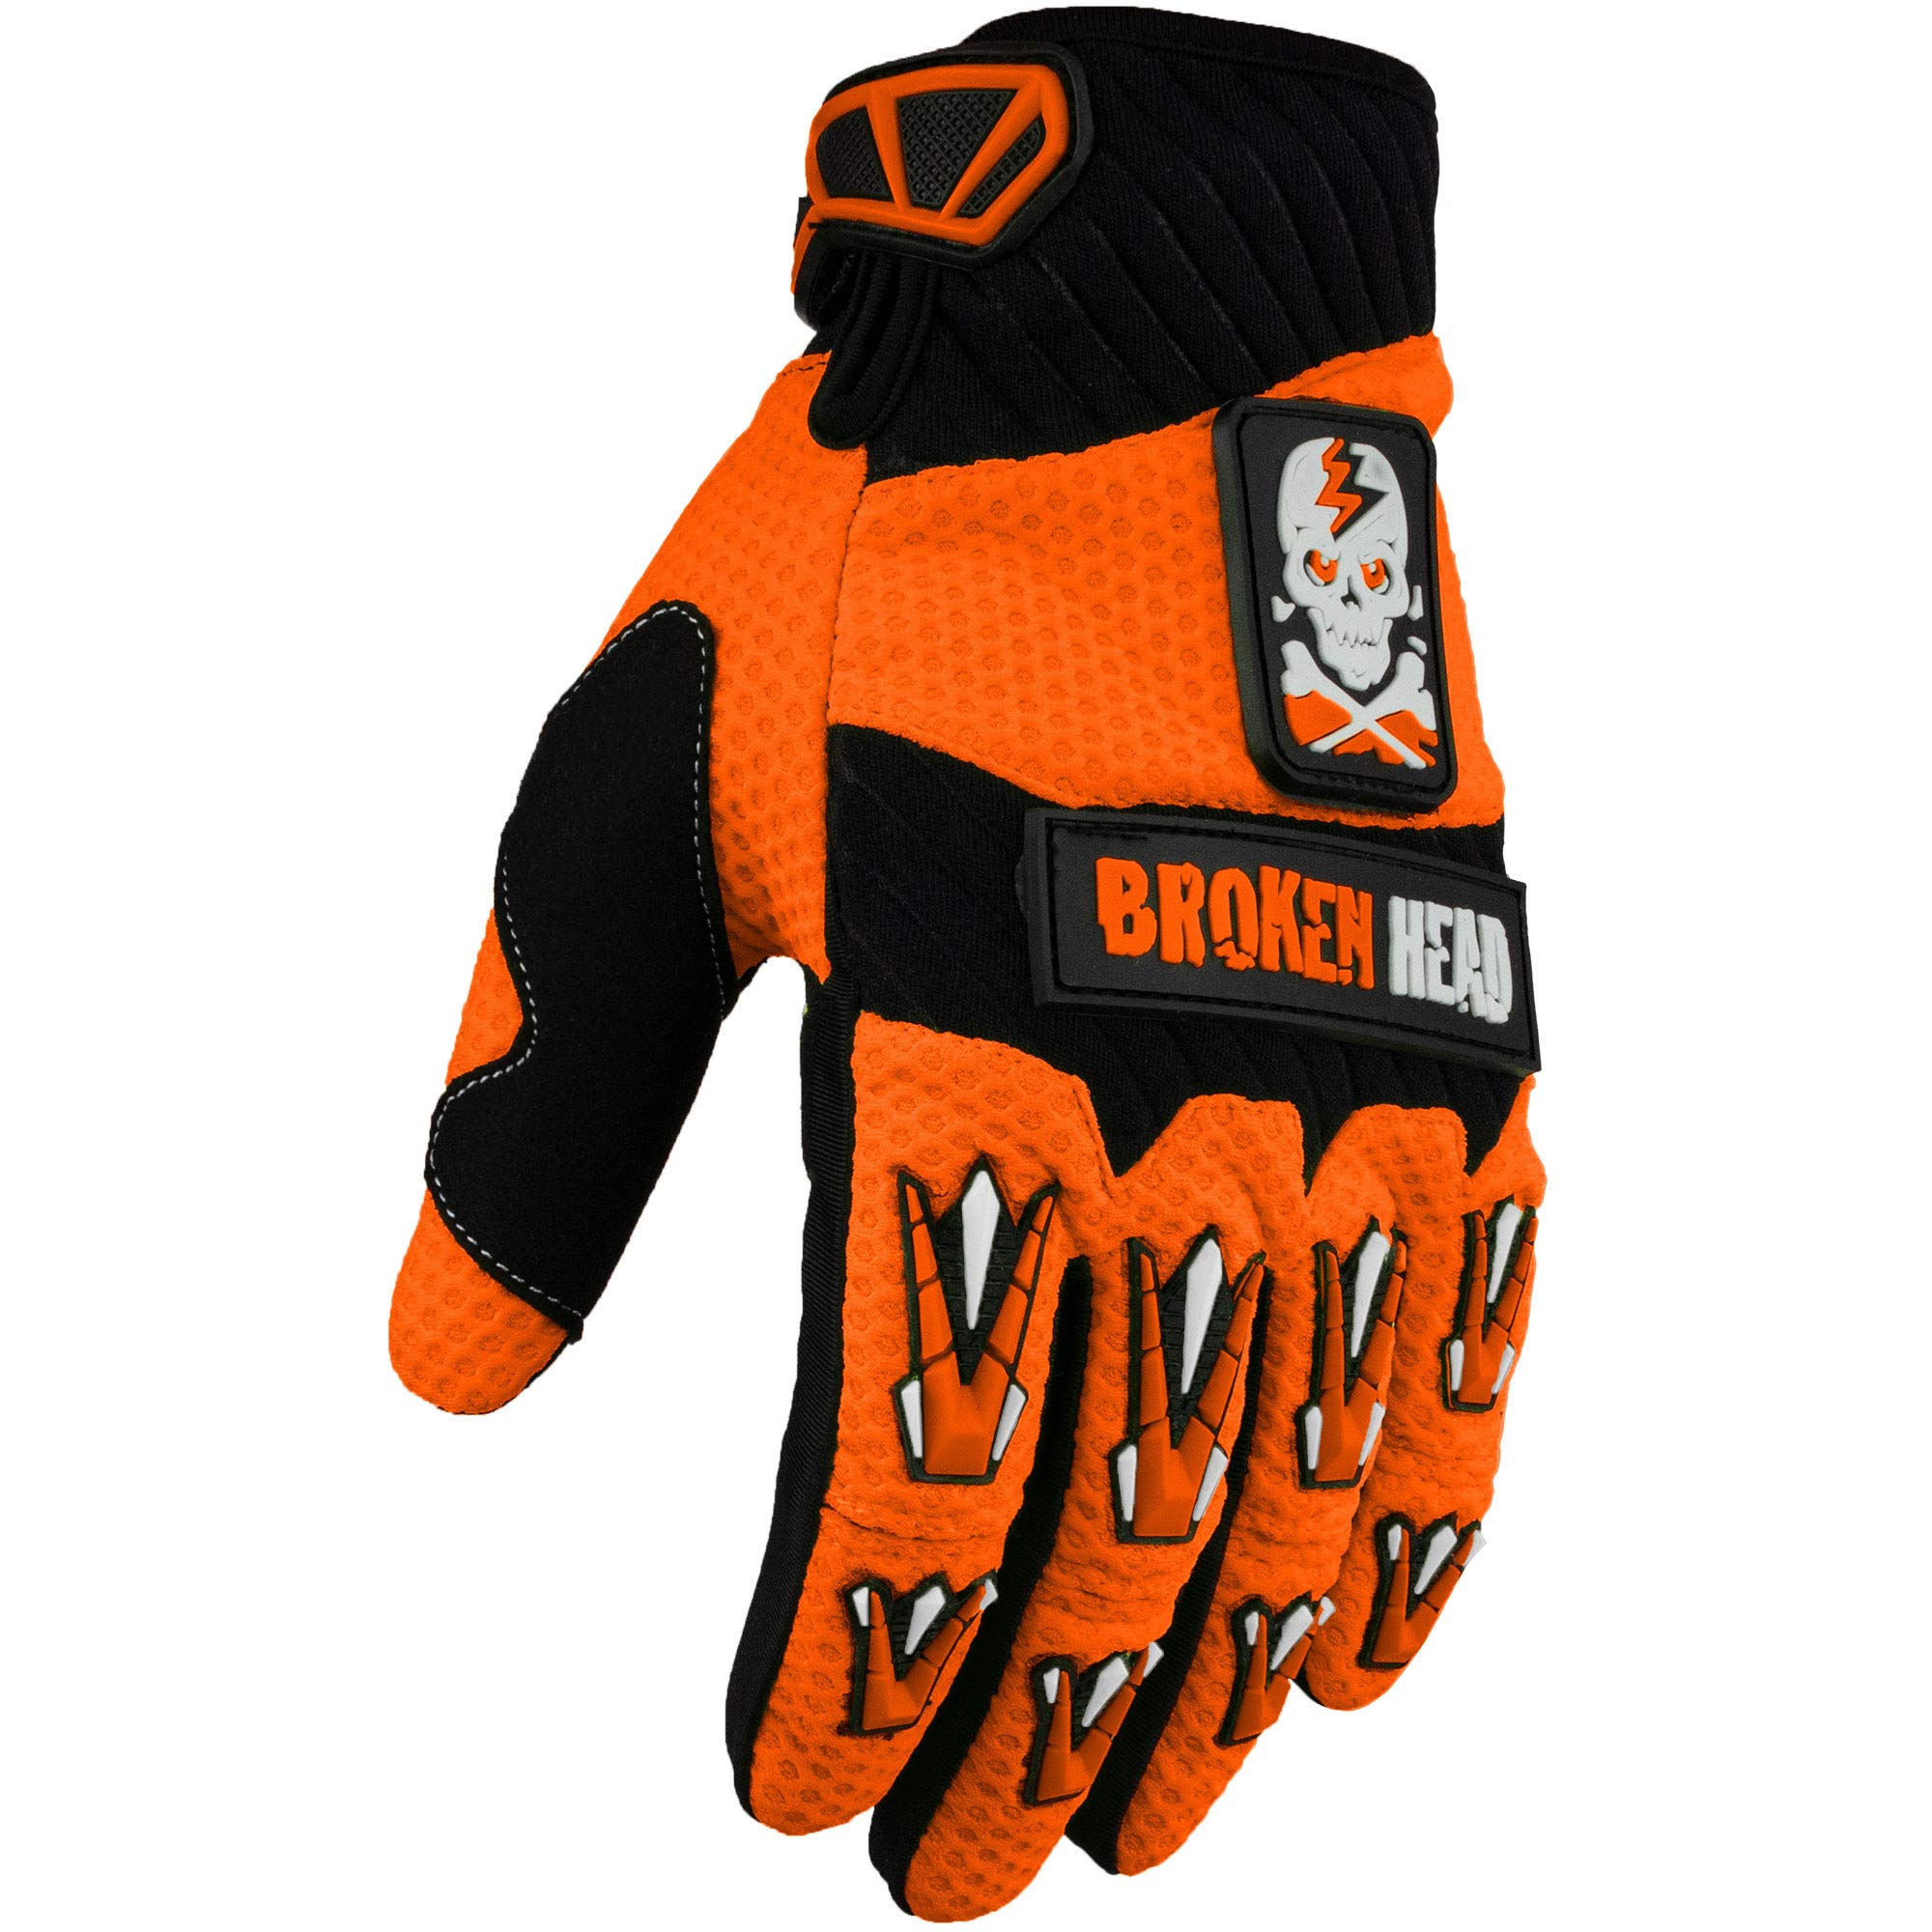 Broken Head MX-Handschuhe Faustschlag - Motorrad-Handschuhe Für Motocross, Enduro, Mountainbike - Orange - Größe S